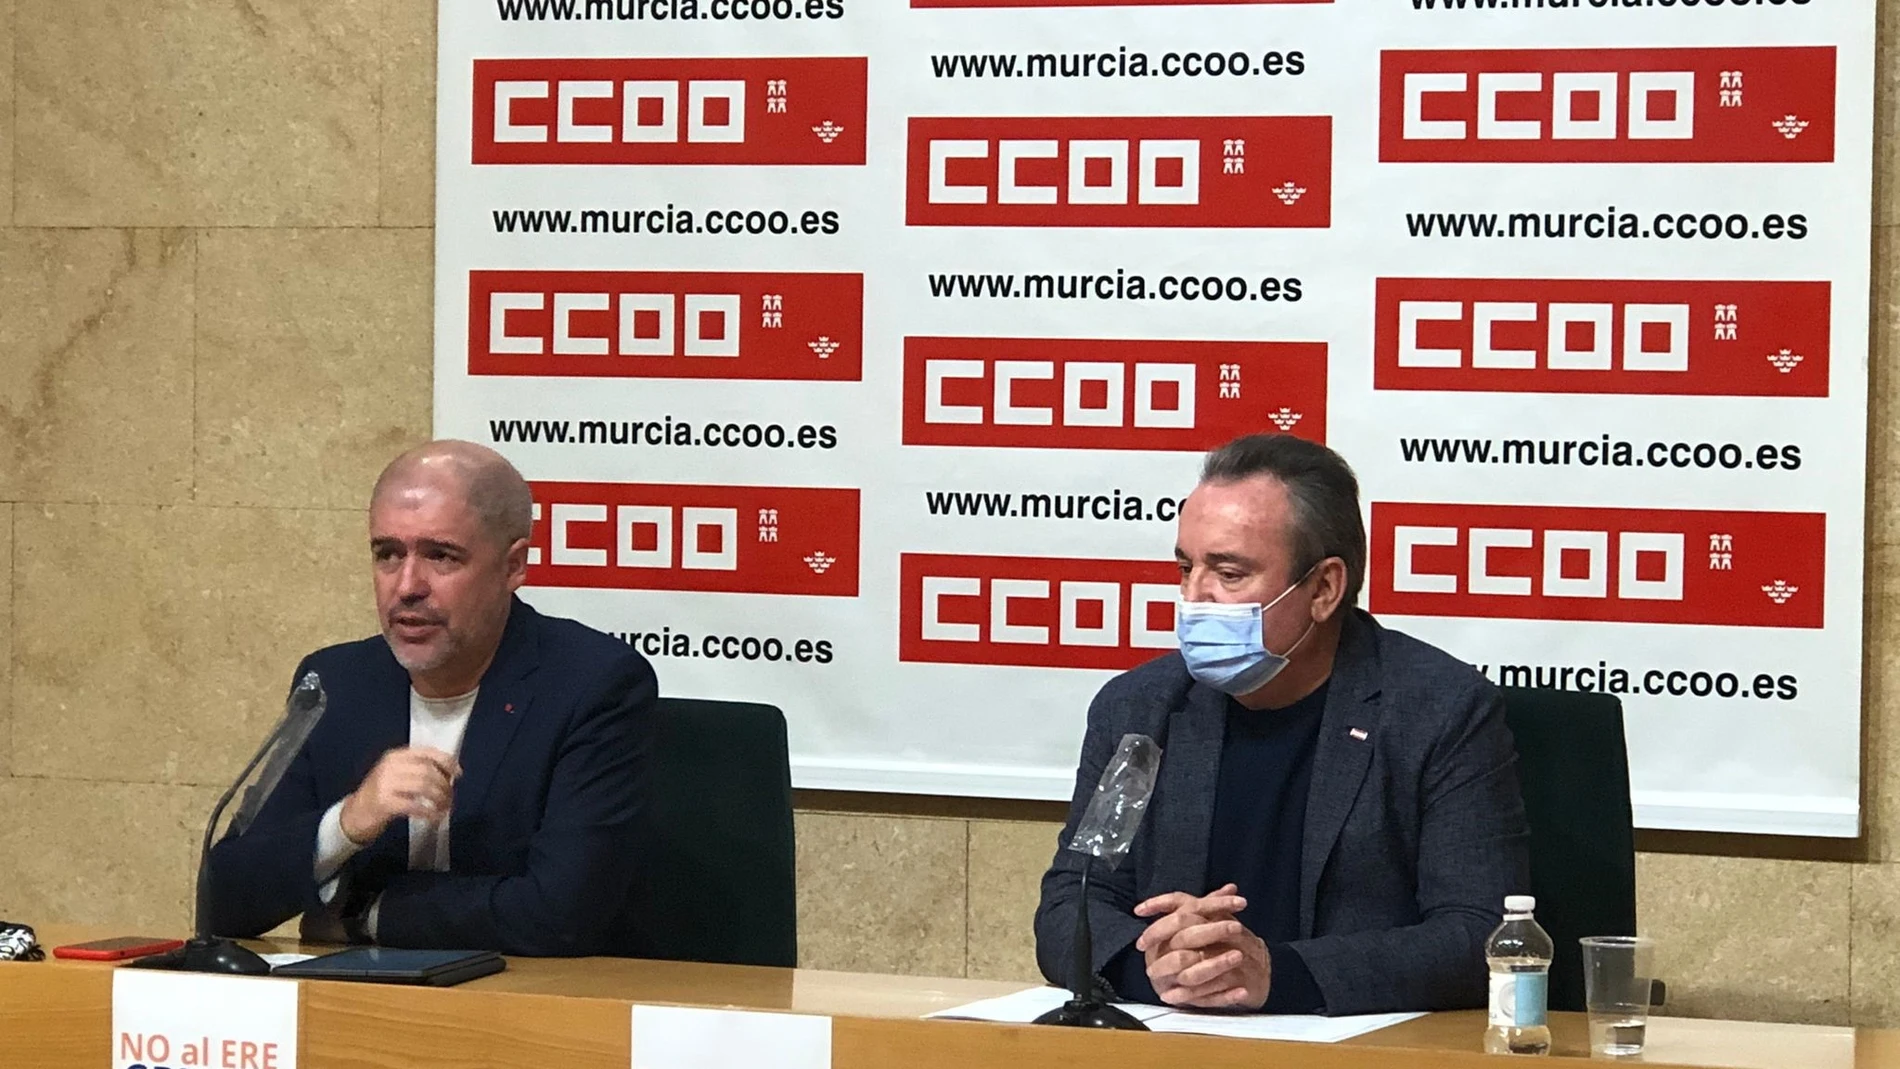 El secretario general de la Confederación Sindical de CC OO, Unai Sordo, junto a Santiago Navarro, secretario general en Murcia